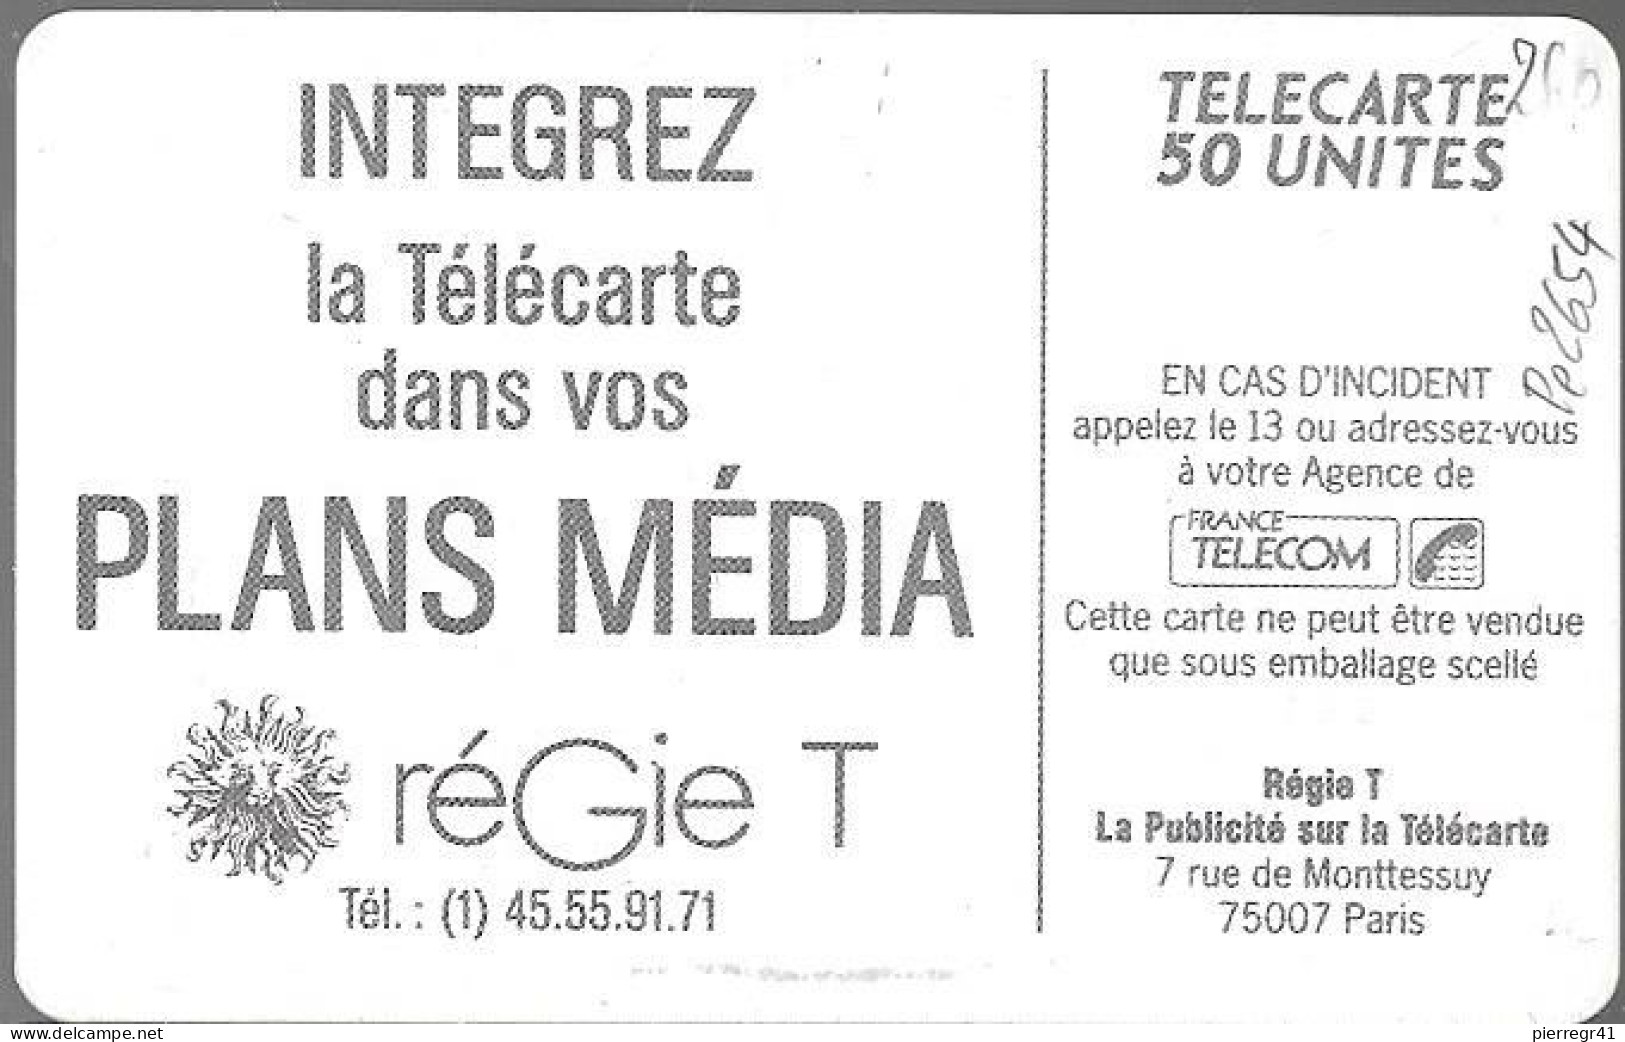 CARTE-PRIVEE-50U-So2-D260-REGIE T-Carte A PUB-R°Mat-N°4 Pe-2654-5000Ex-Utilisé-TBE-R°Le Leger Maculage Est D Origine - Telefoonkaarten Voor Particulieren